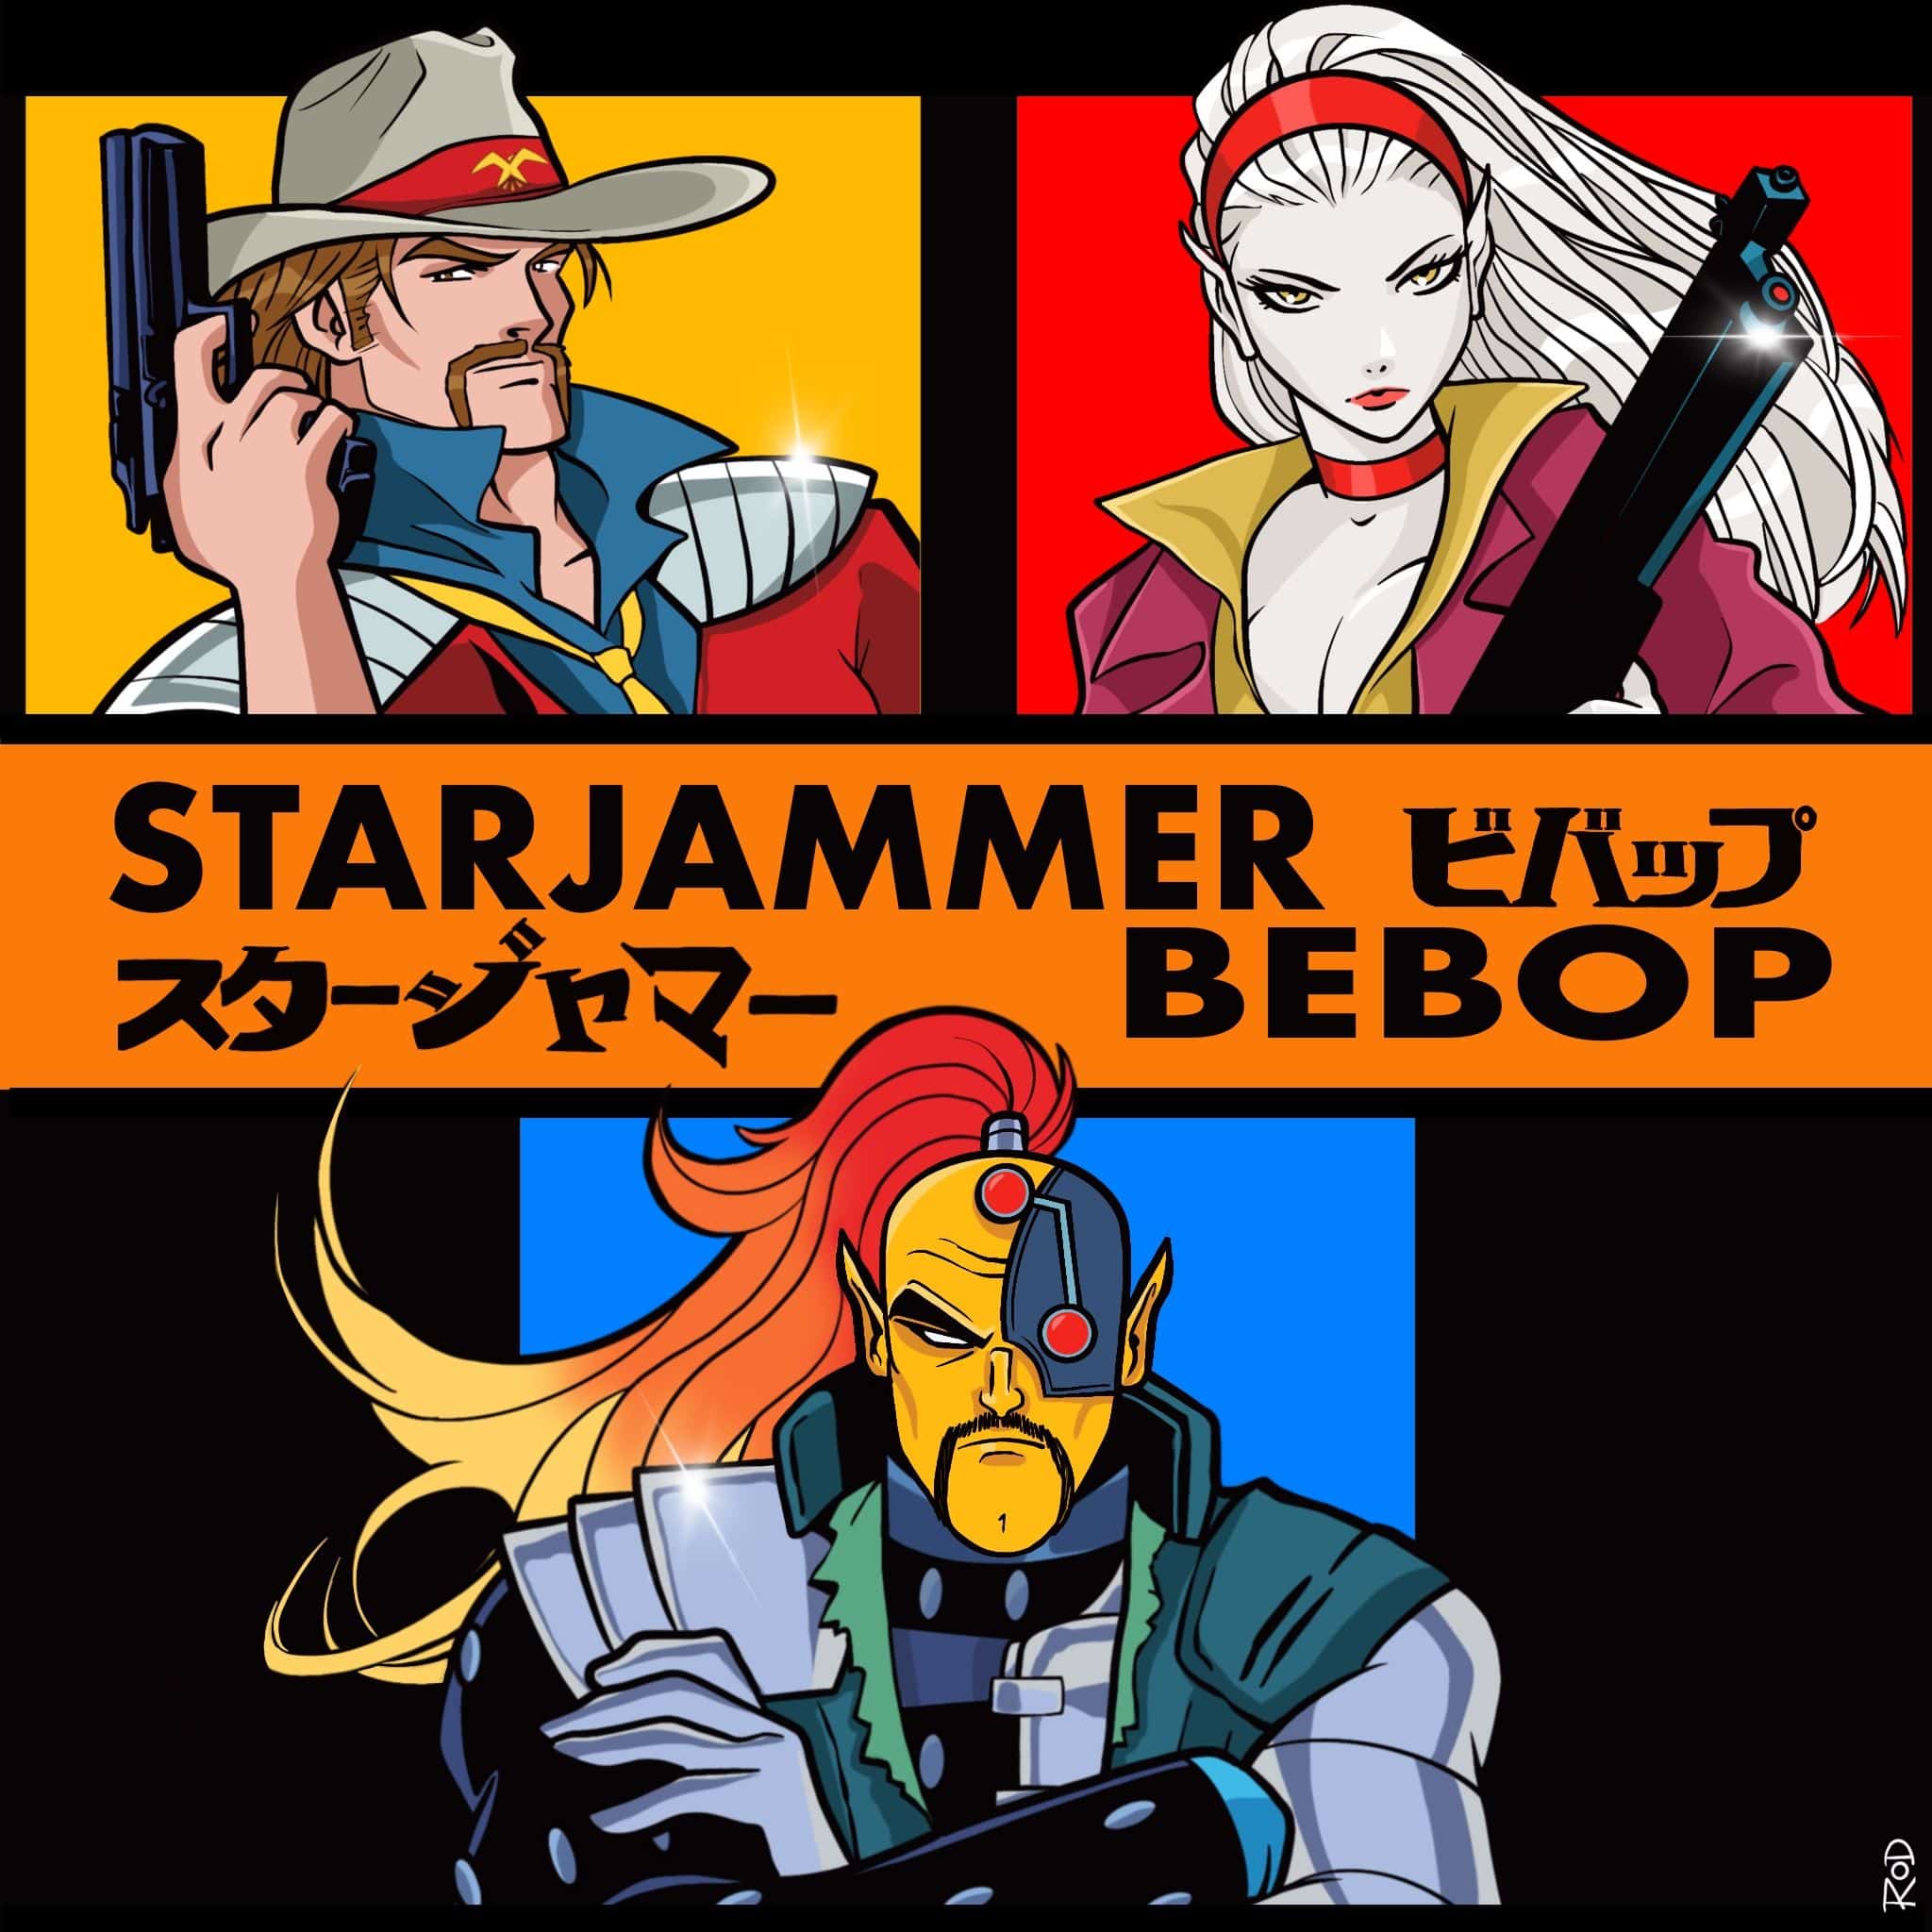 Starjammers como Cowboy Bebop